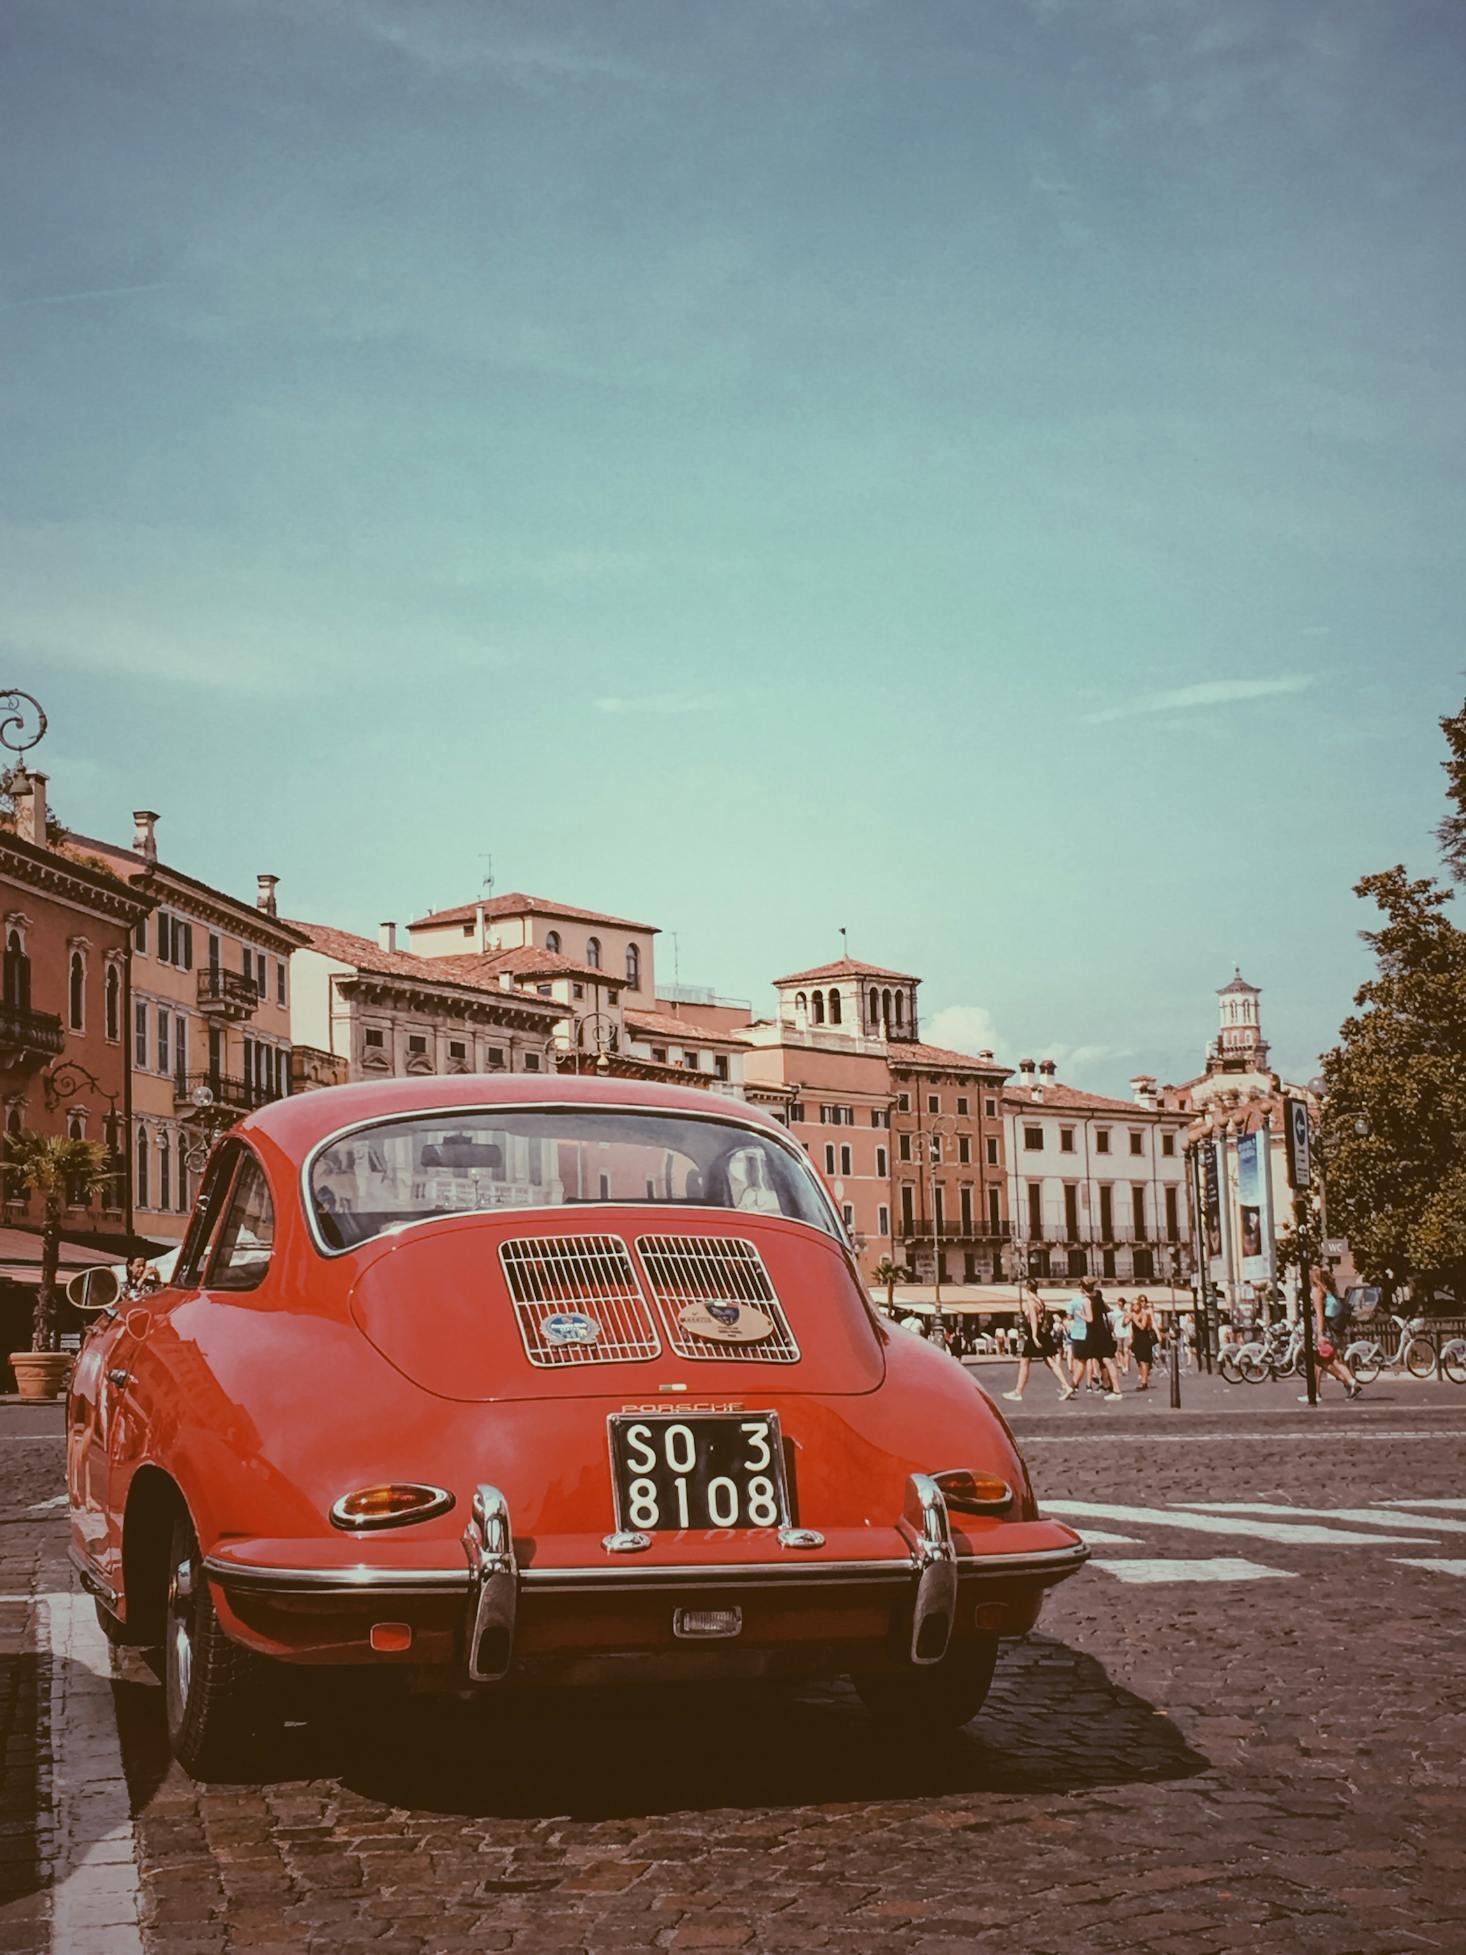 Vintage sports car in Verona, Italy